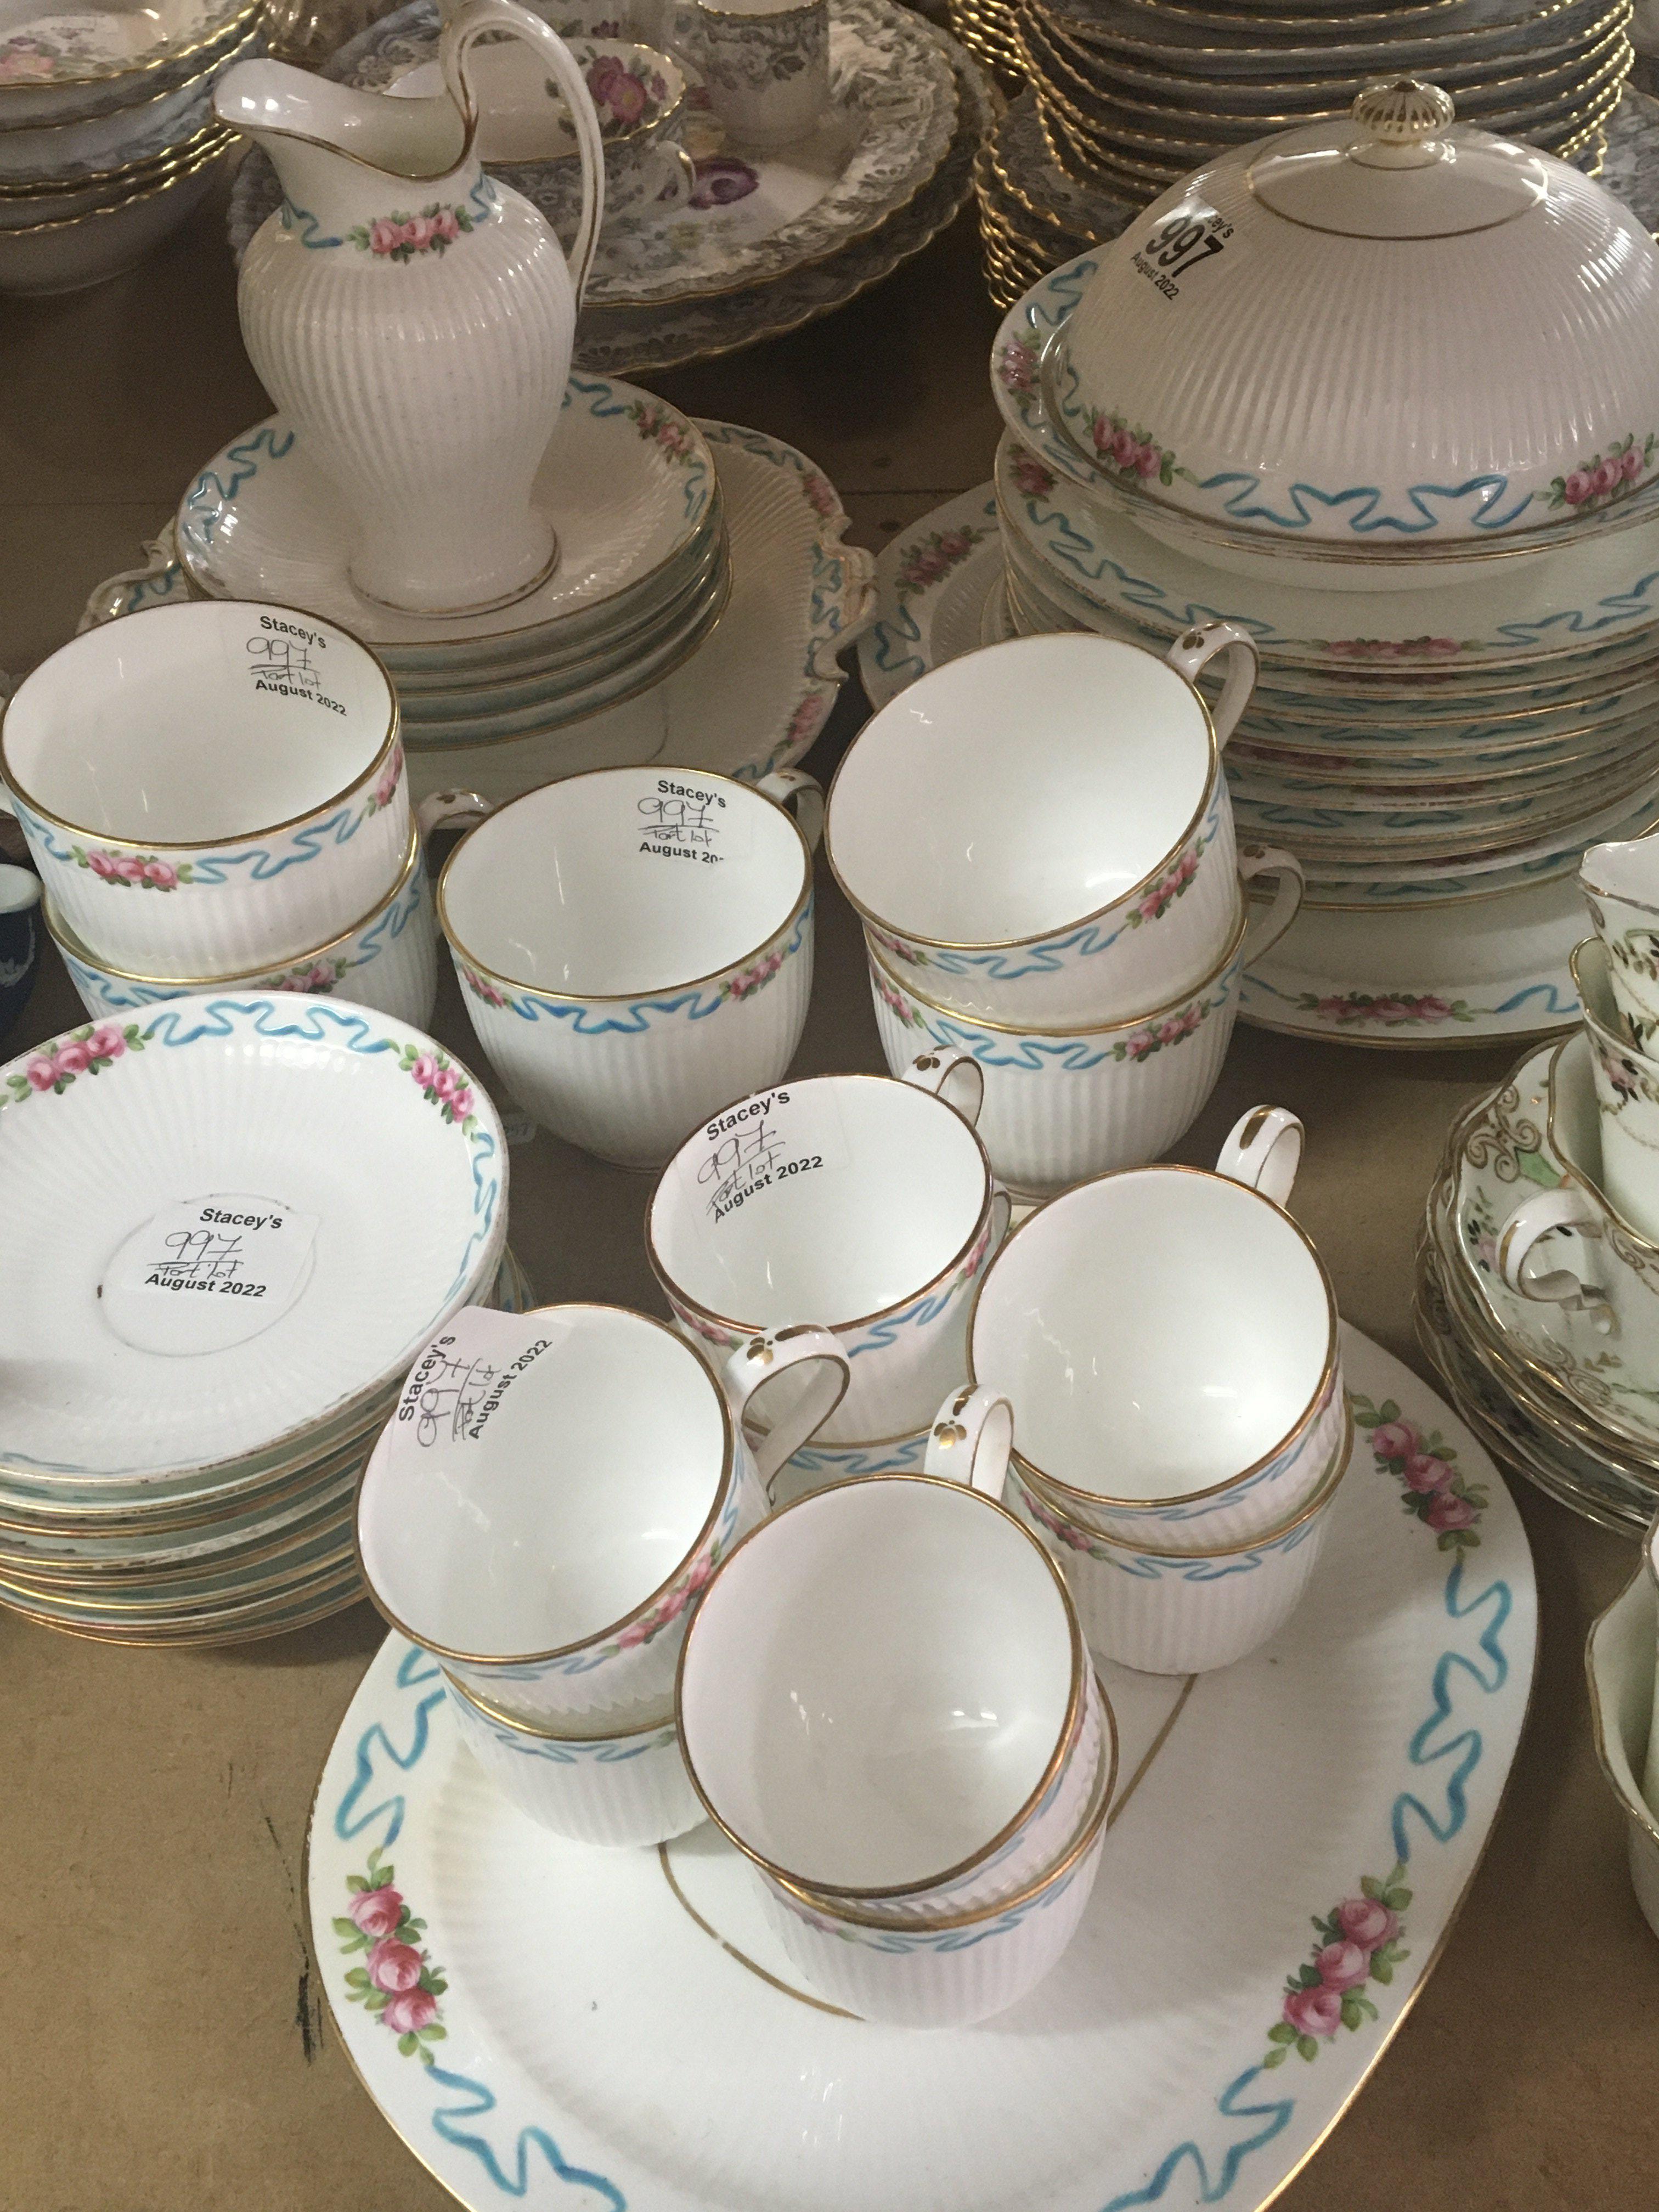 A decorative porcelain tea set decorated with flow